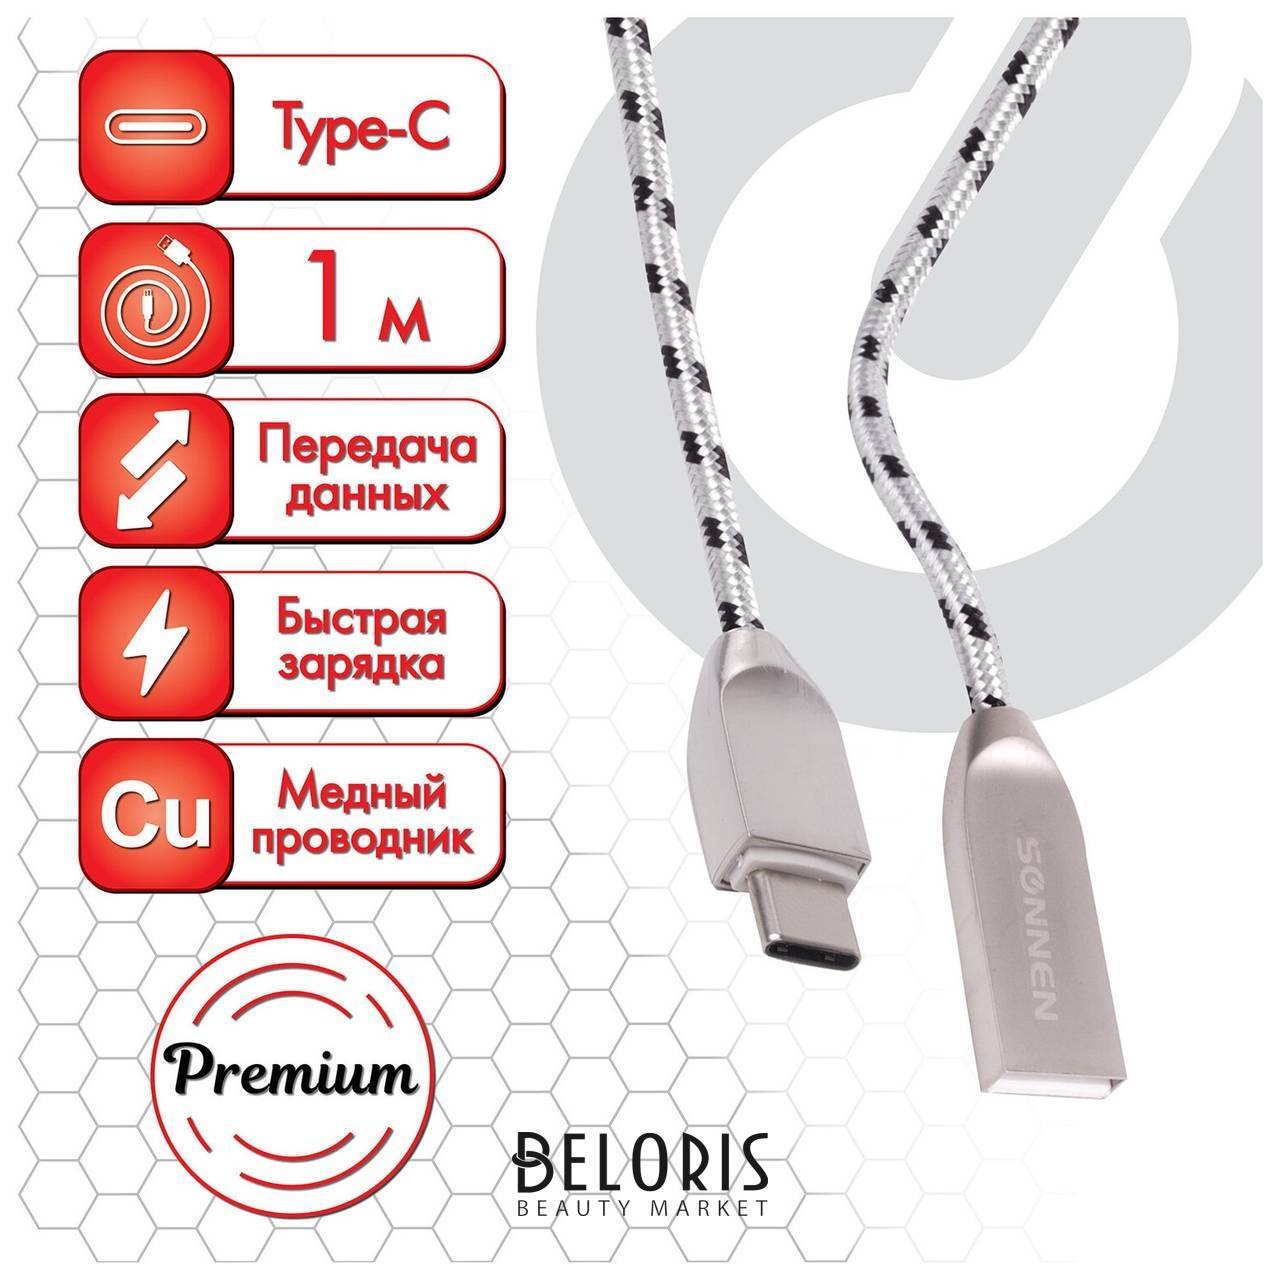 Кабель USB 2.0-type-c, 1 м, Sonnen Premium, медь, передача данных и быстрая зарядка, 513127 Sonnen